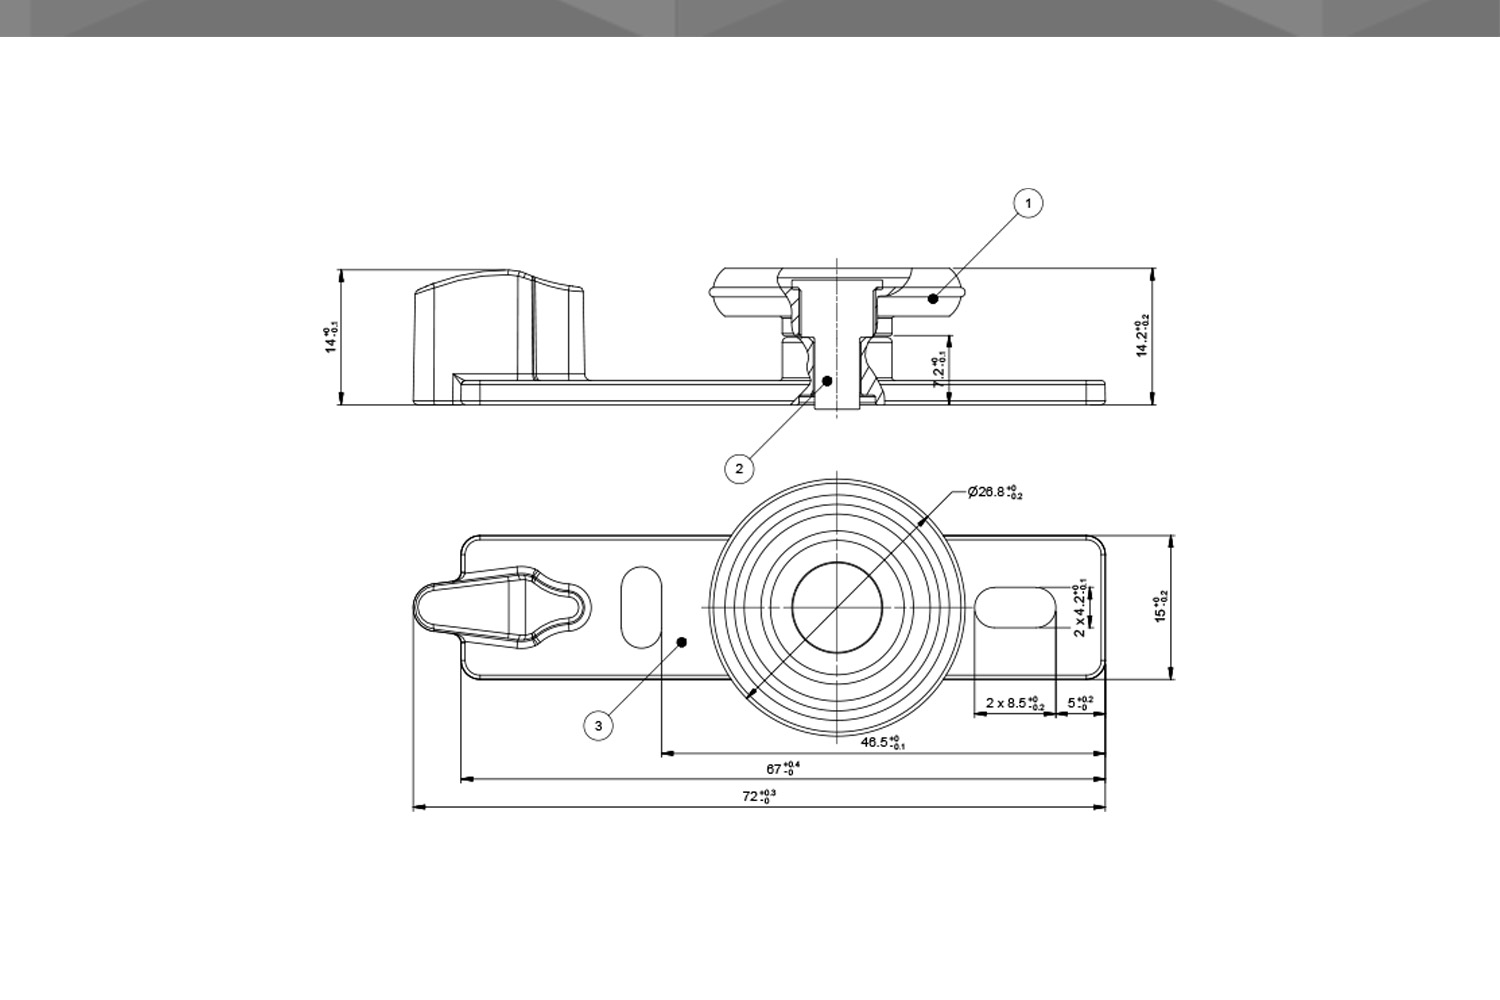 Desenho Técnico Guia RM Reta  1 Rodízio Ø26,8 mm POM Encaixe Reforçado